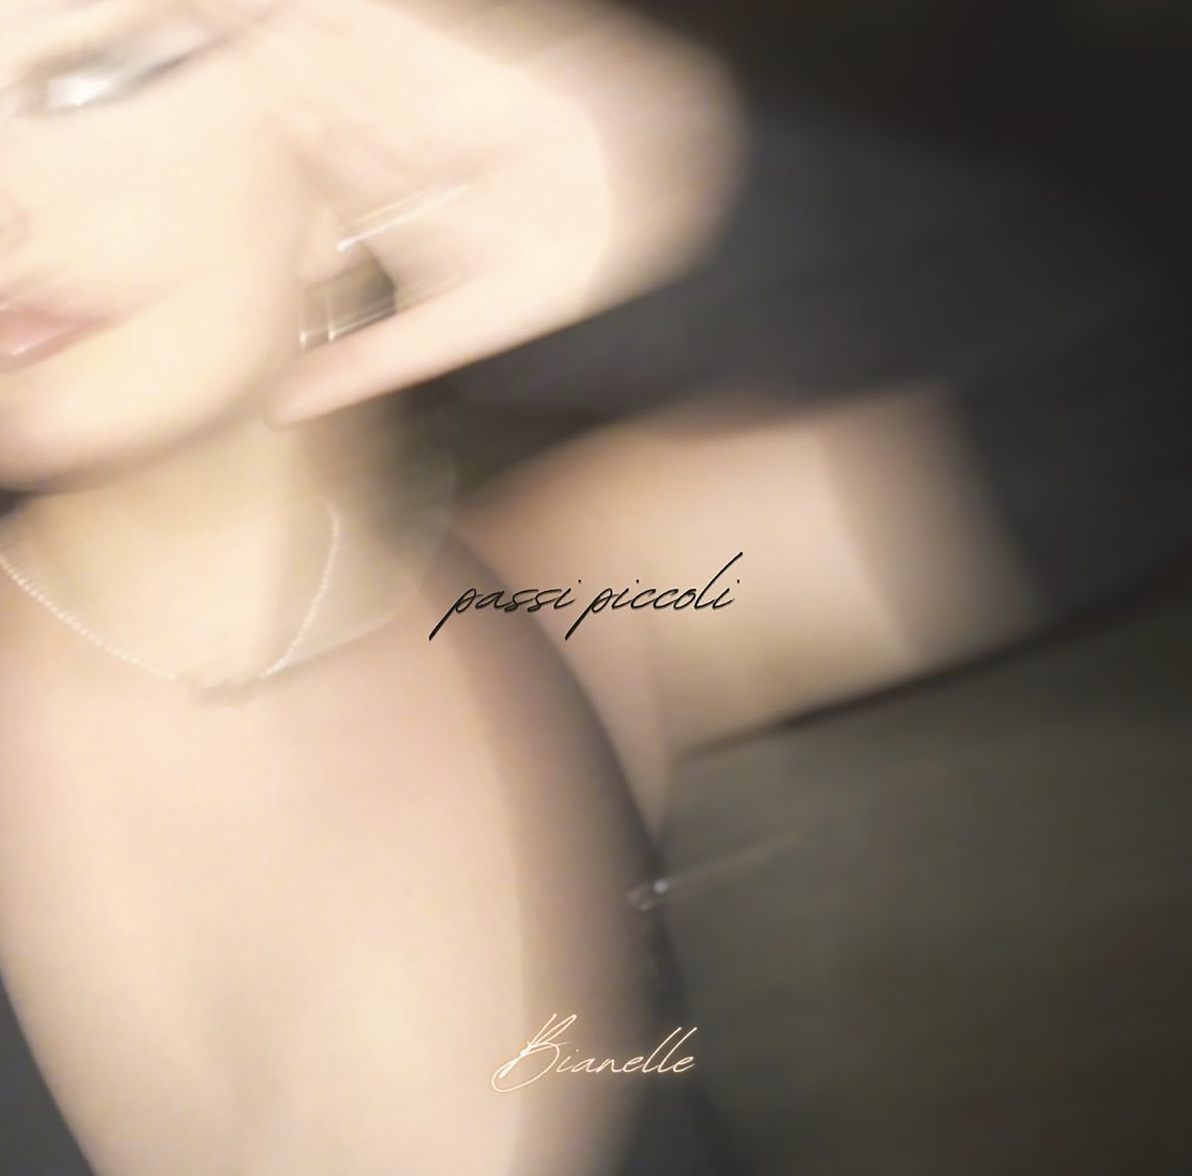 Bianelle presenta il nuovo singolo “Passi Piccoli” prodotto da Andrea Piraz